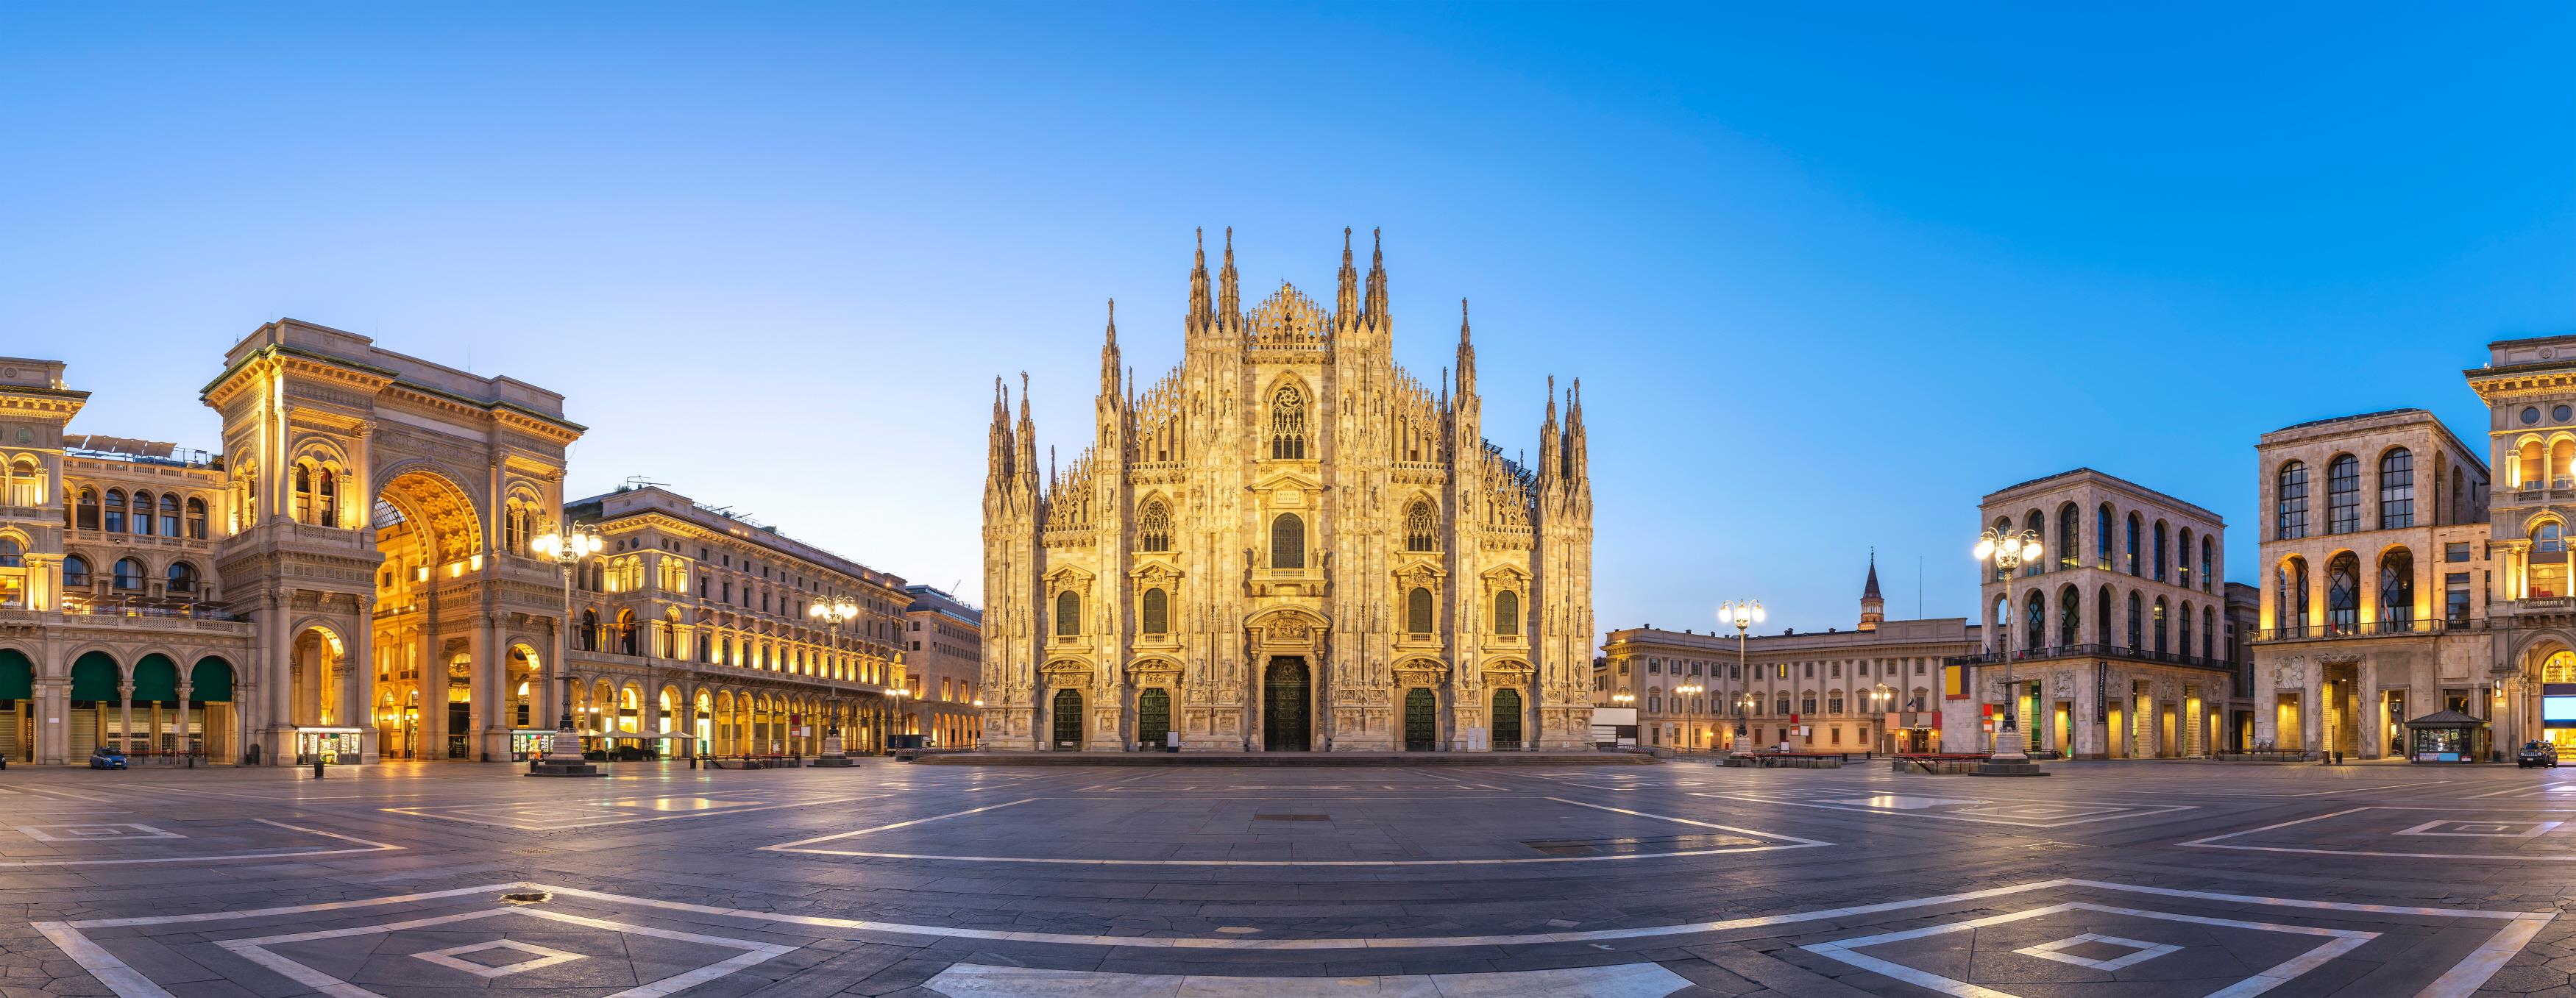 밀라노 두오모  Duomo di Milano